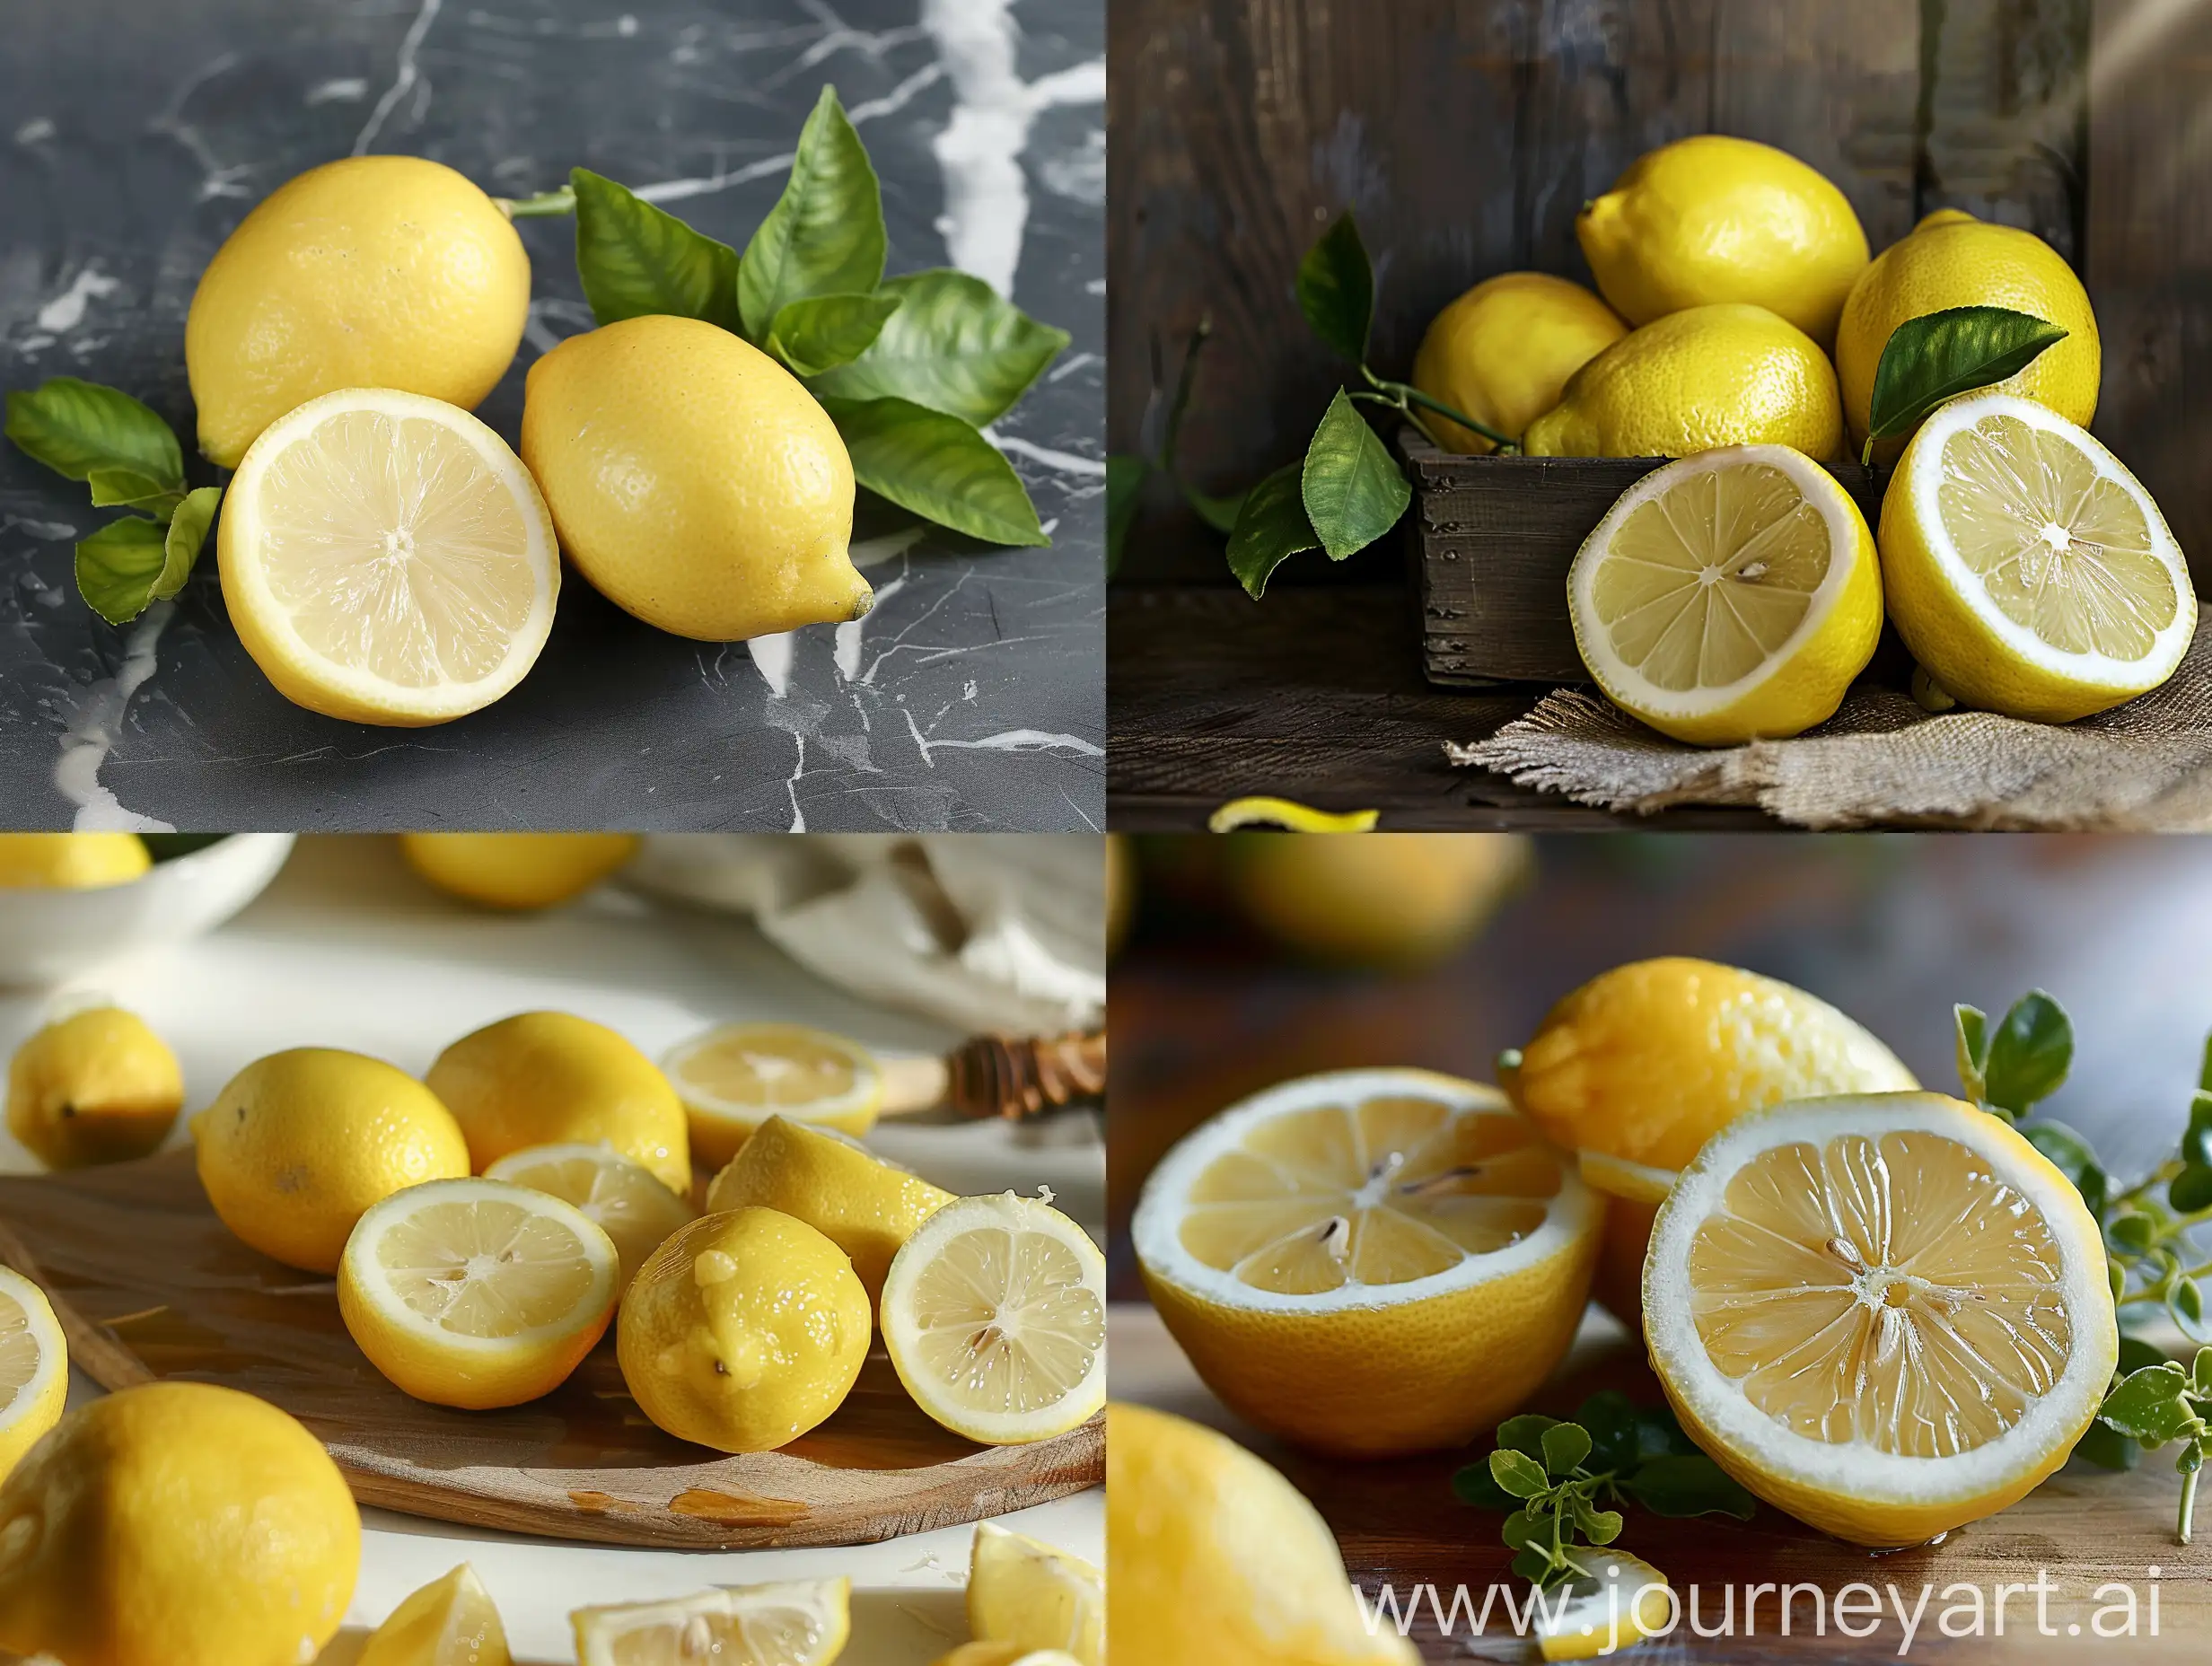 Promotional photo of lemon